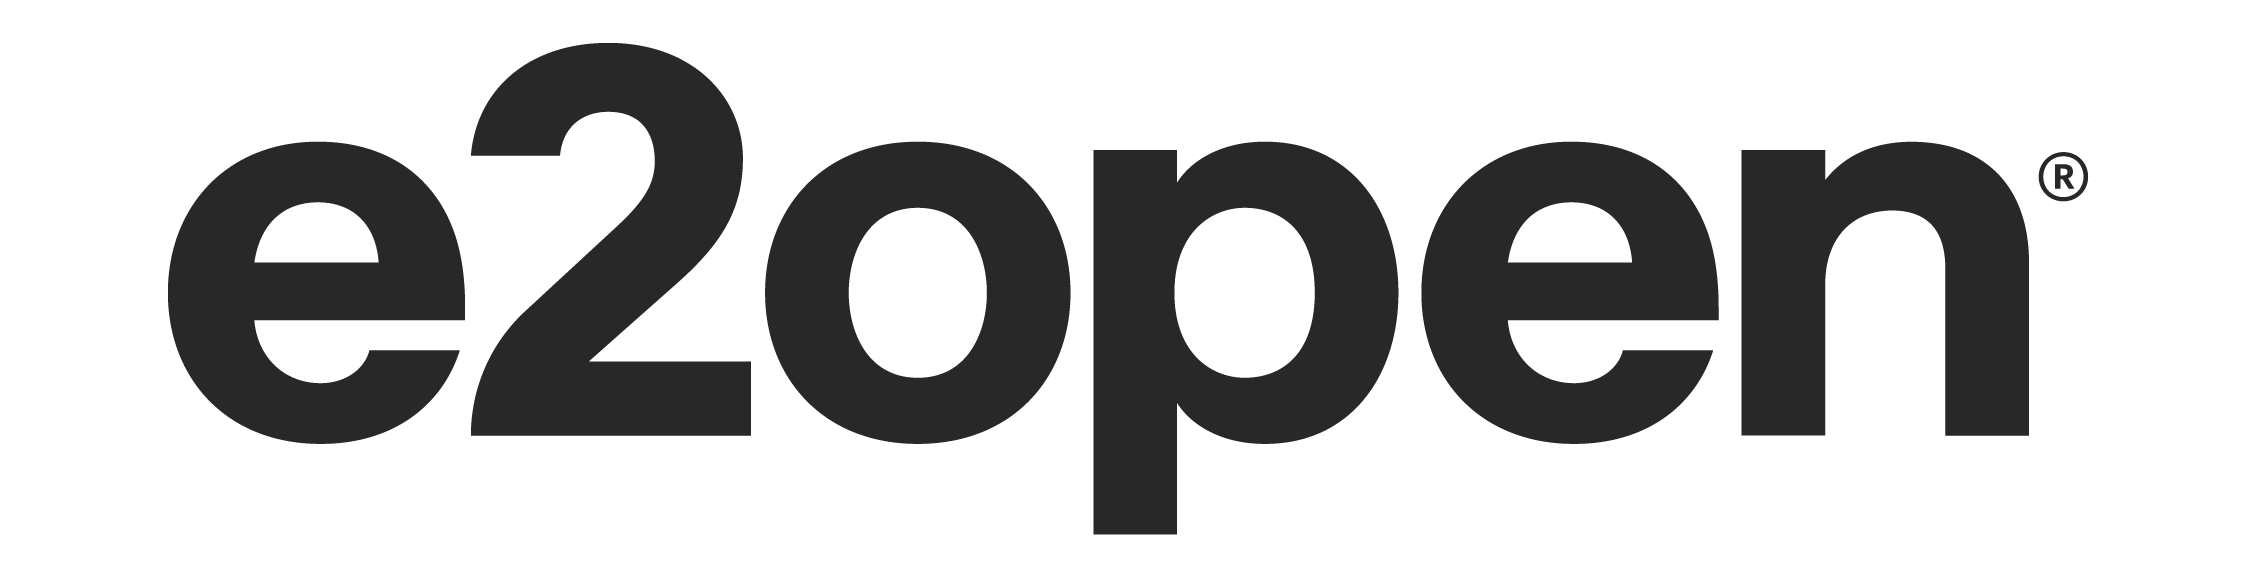 logotipo de e2open